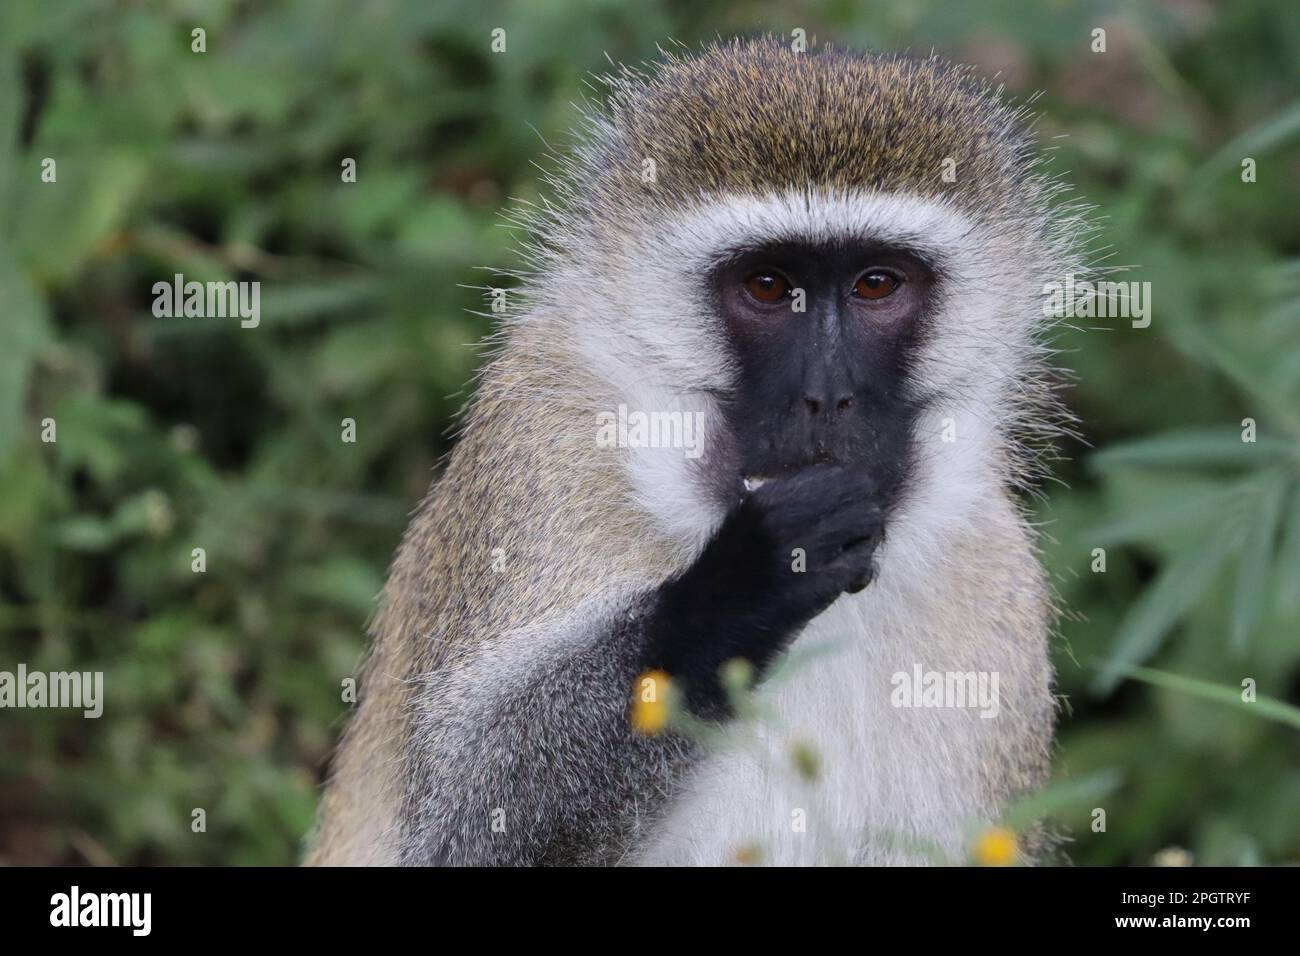 Ein bezaubernder Primat mit einem verlängerten Gesicht und einer schwarzen Nase, der fest an einem Gegenstand in seinen Händen greift Stockfoto